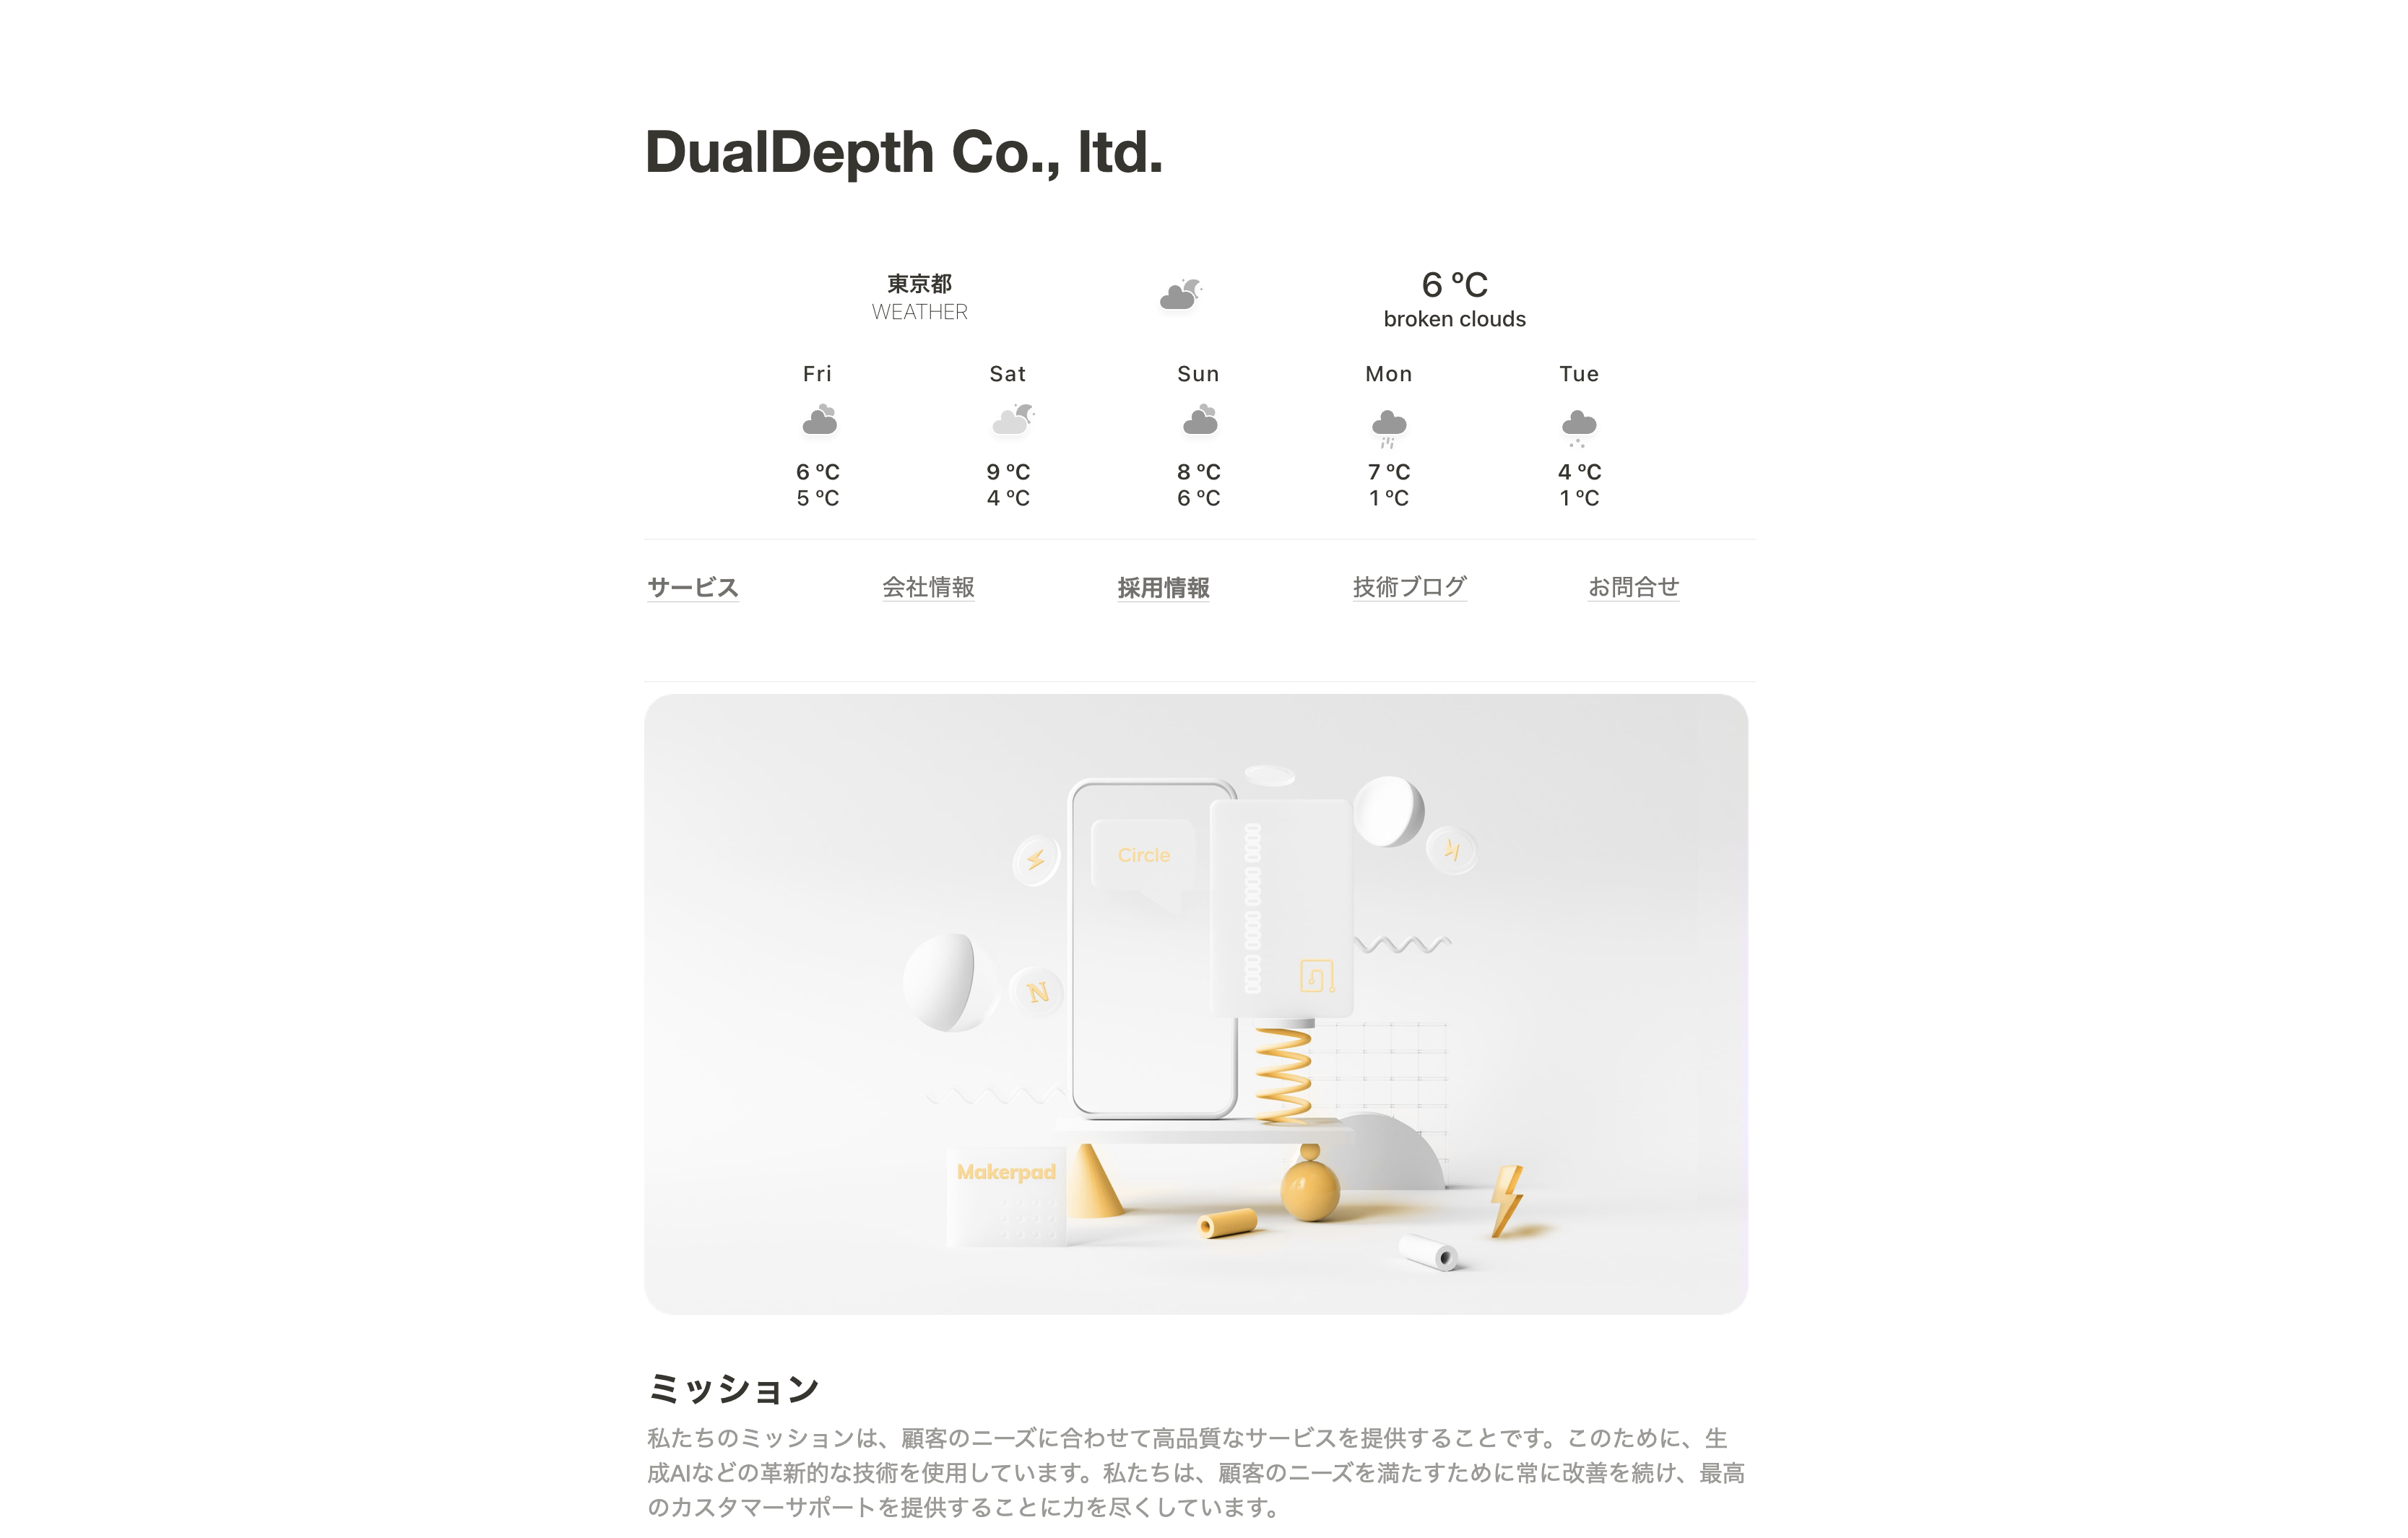 Dual Depth株式会社のDual Depth株式会社:アプリ開発サービス